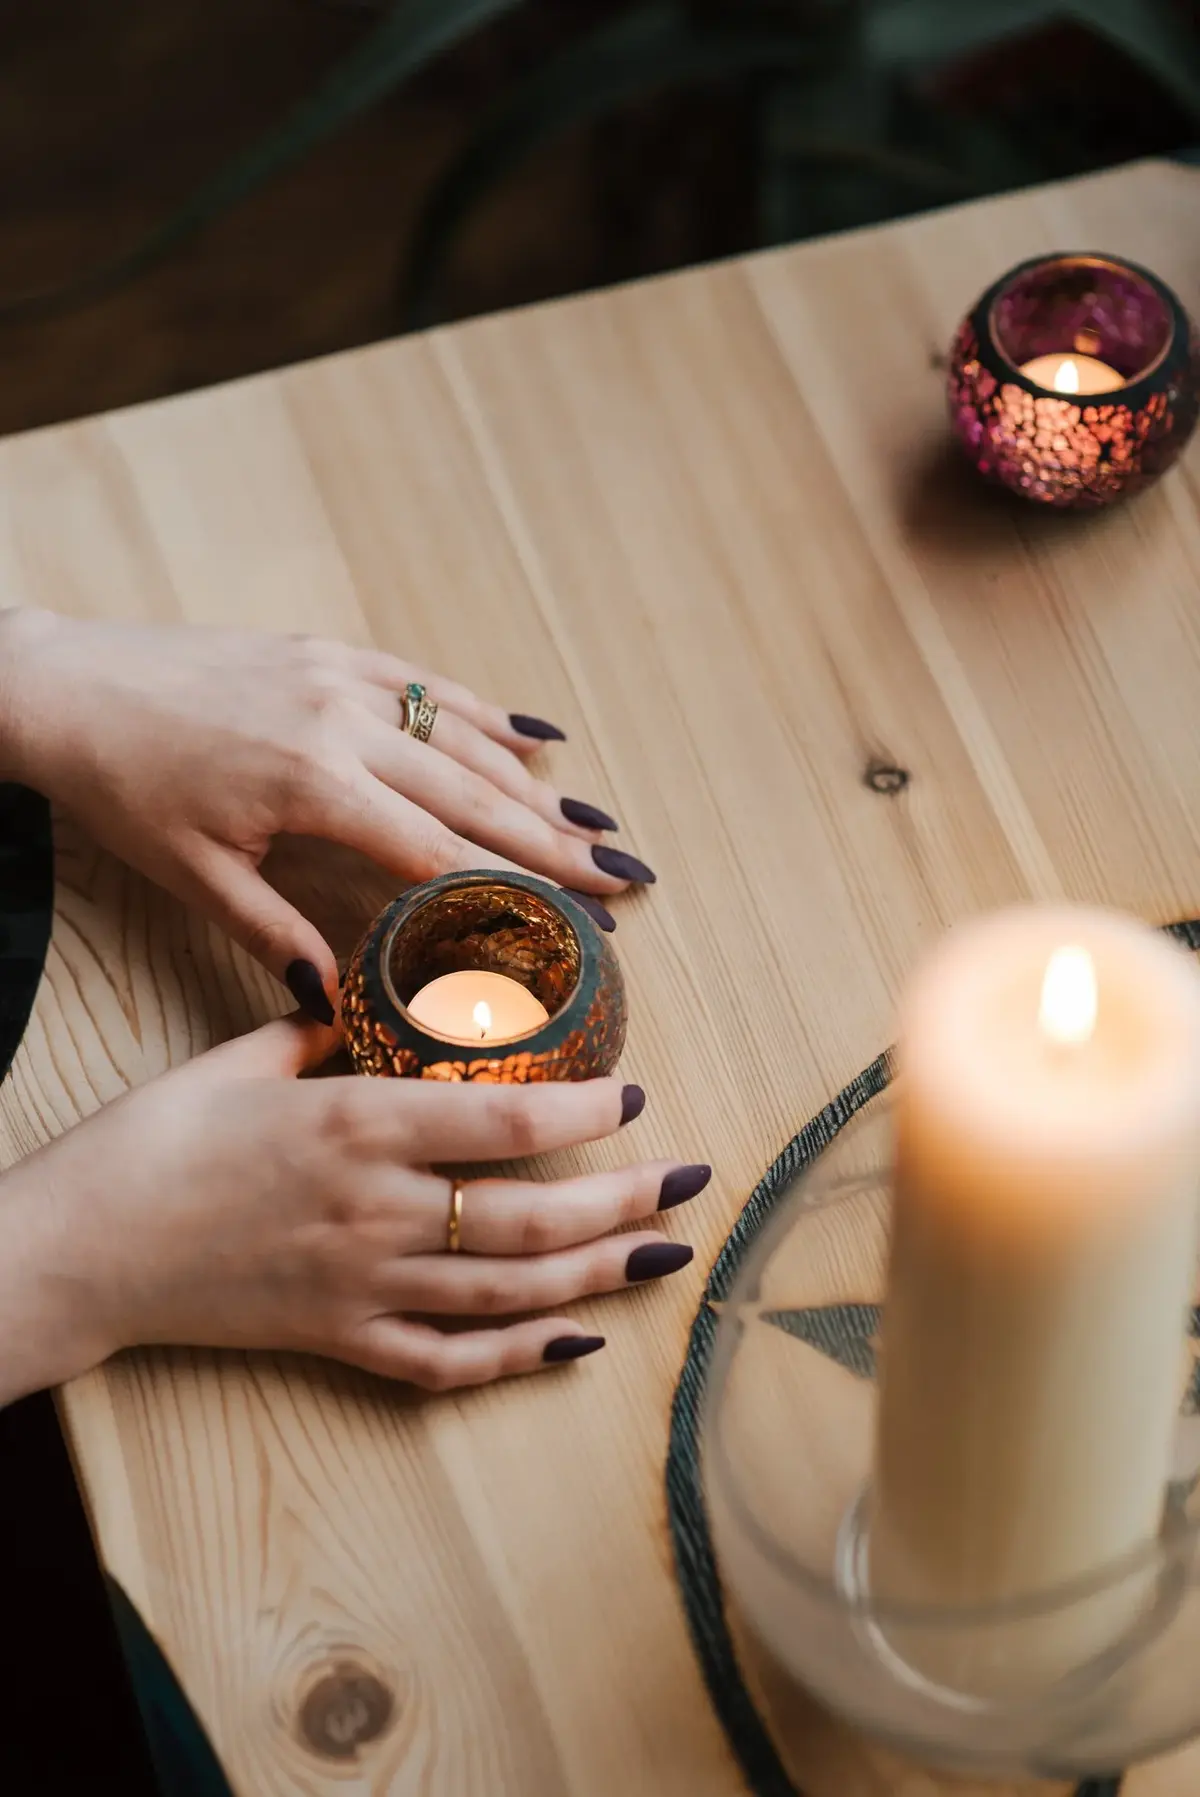 Kobiece dłonie z czarnymi paznokciami trzymające świeczkę na blacie stołu, na którym są ułożone świeczki